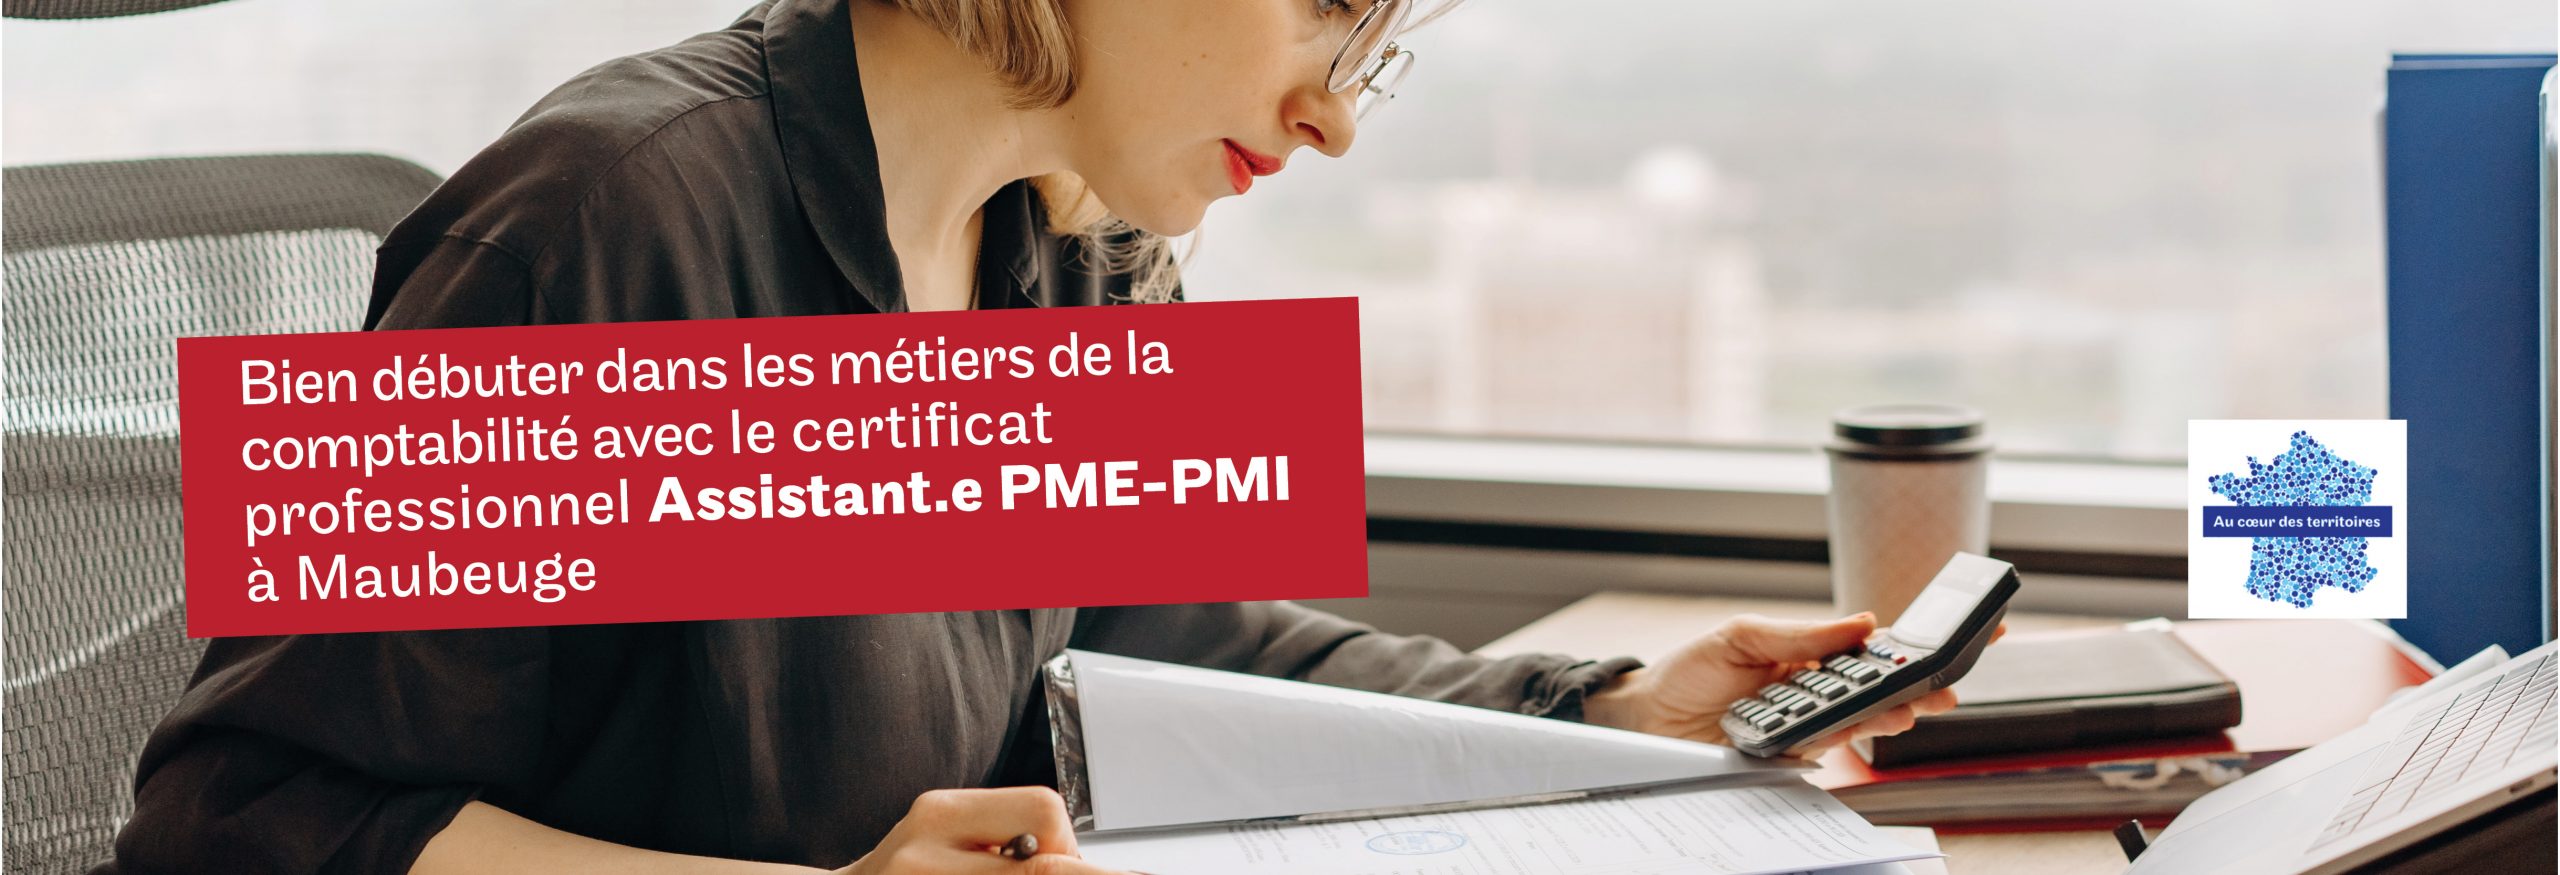 préparer le certificat professionnel Assistant PME PMI avec le Cnam à Maubeuge